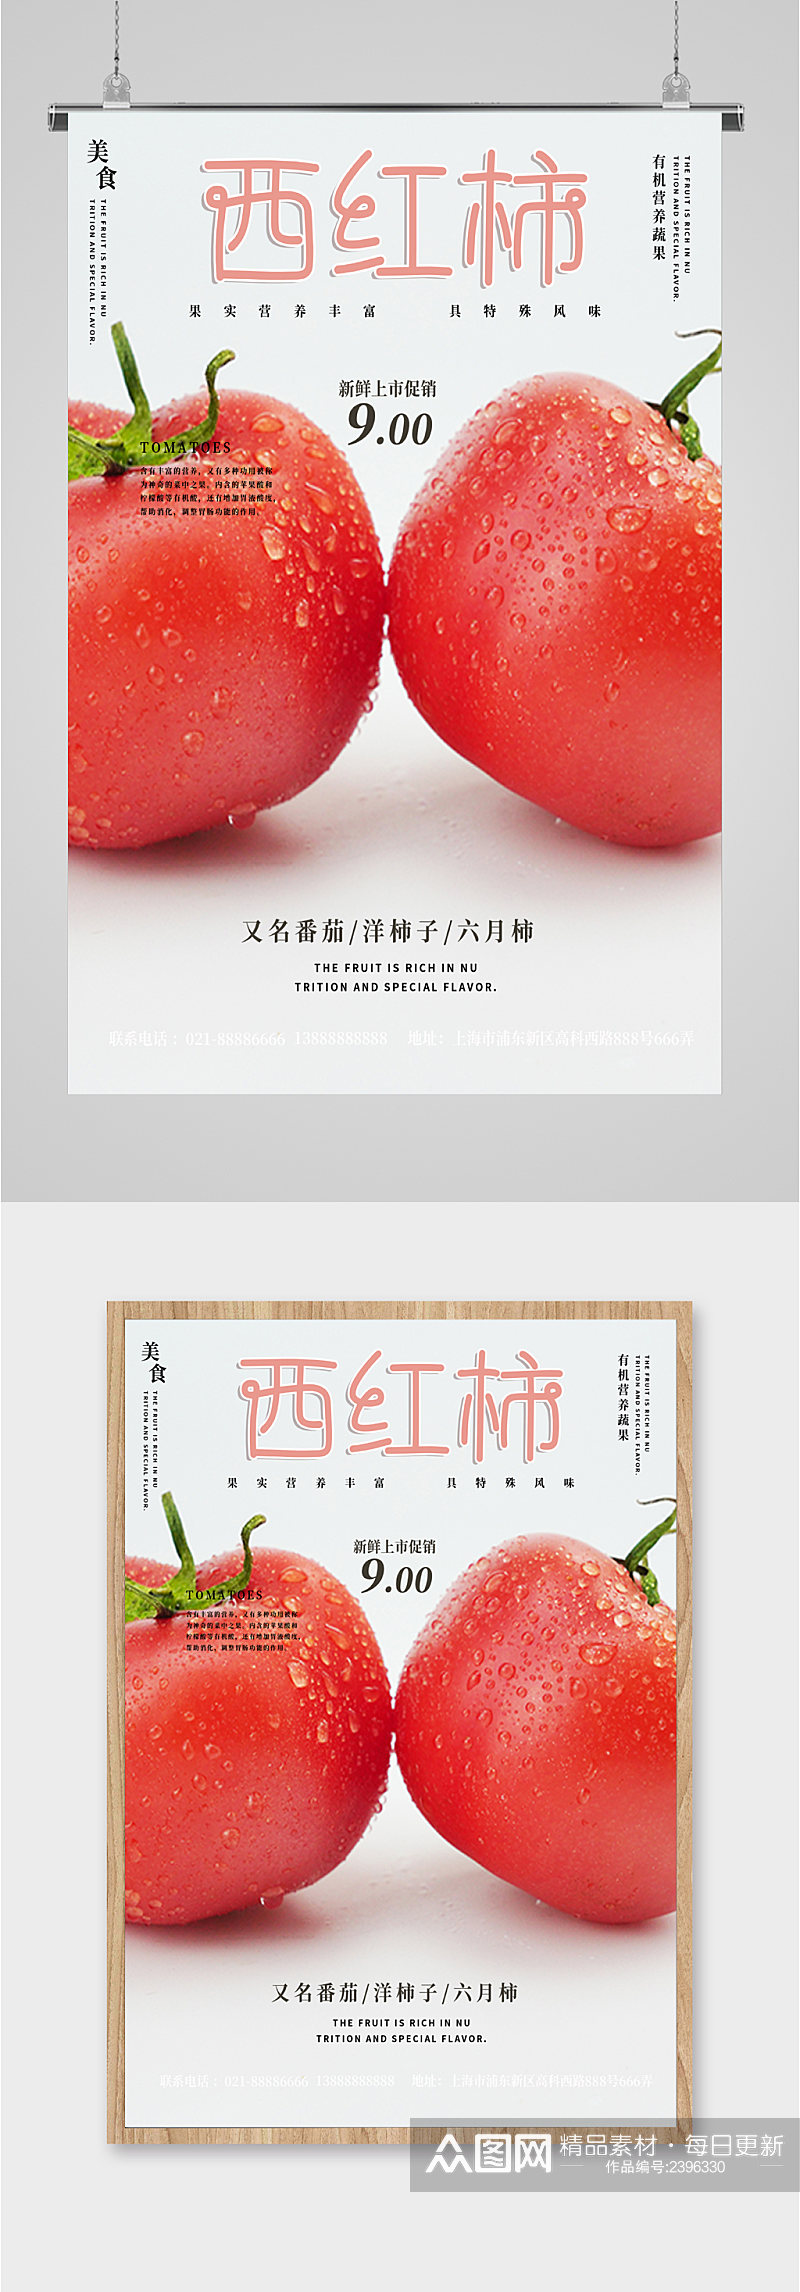 西红柿健康蔬菜海报素材